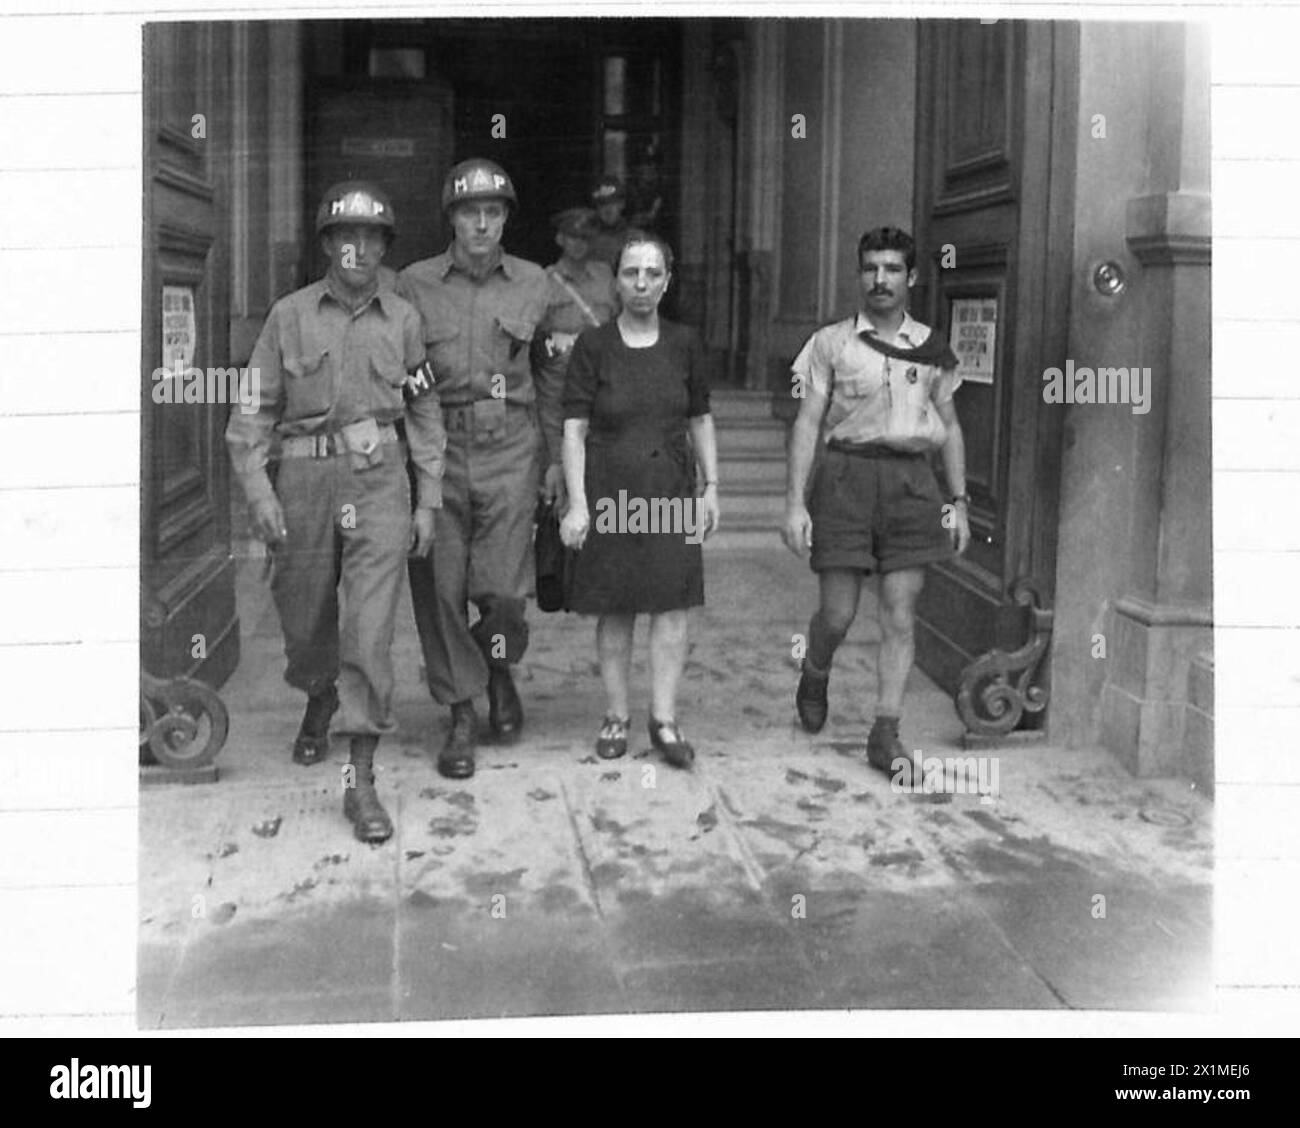 UMGEBUNG VON FLORENZ: VERSCHIEDENE - Signorina Eveliane wird zum Hauptquartier der F.S. in Florenz gebracht und verhört. Sie behauptete, dass sie nur verwundeten Soldaten geholfen habe und musste sich der Brigato Bruno Fancuillassi anschließen, um ihre Arbeit in der British Army fortzusetzen Stockfoto